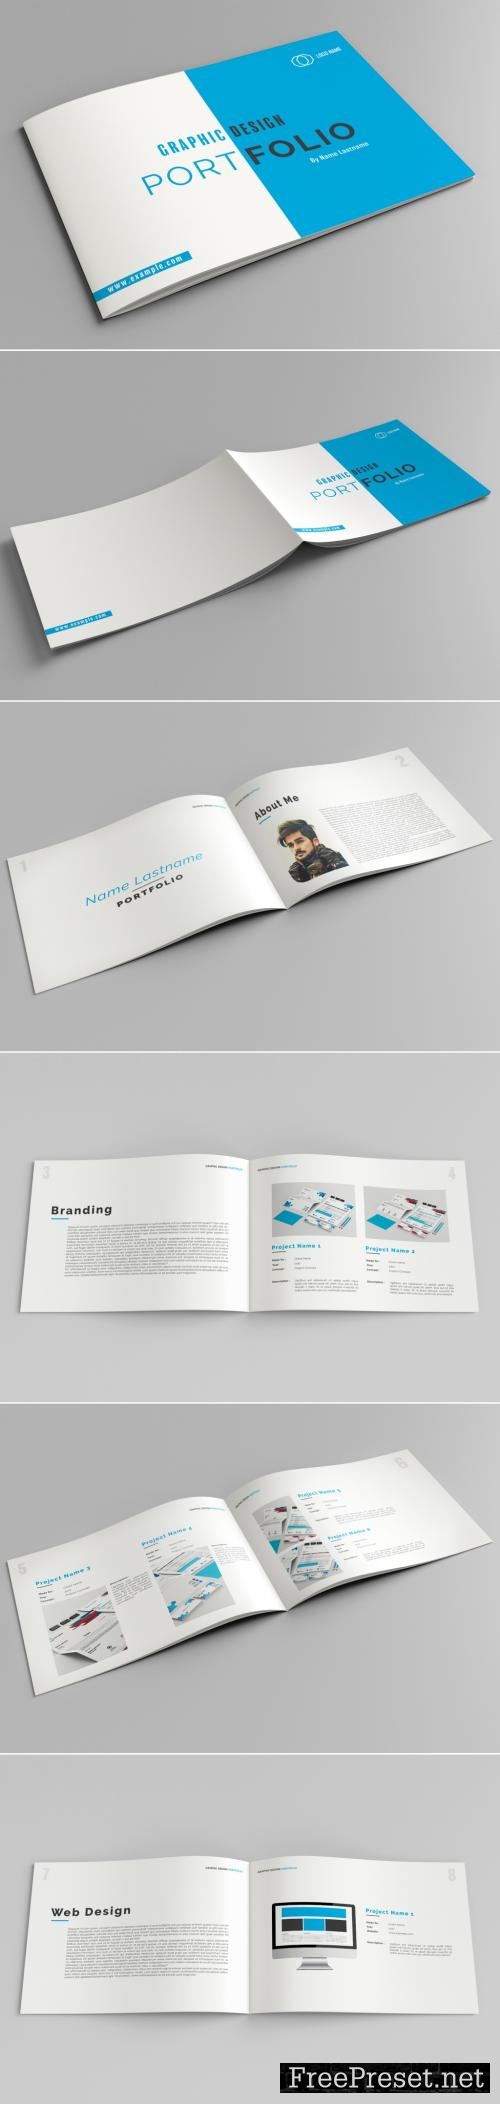 graphic design portfolio template